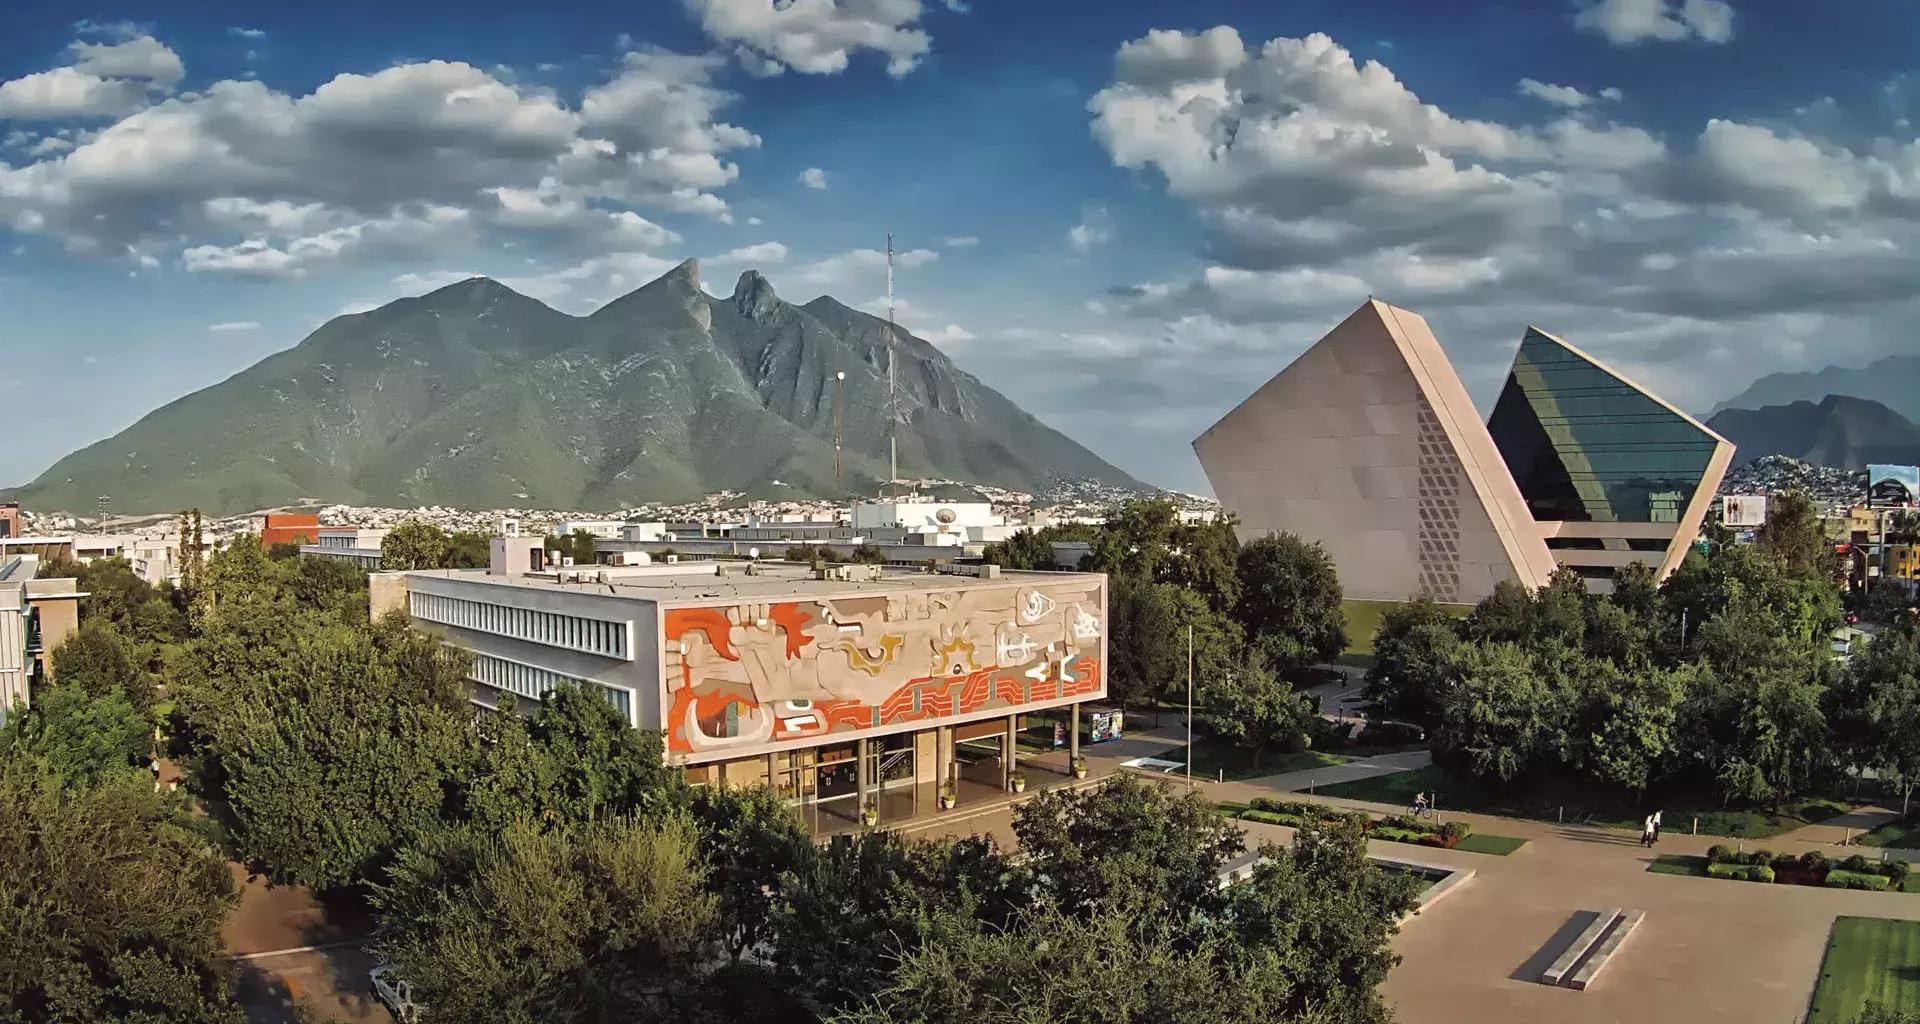 Tecnológico de Monterrey